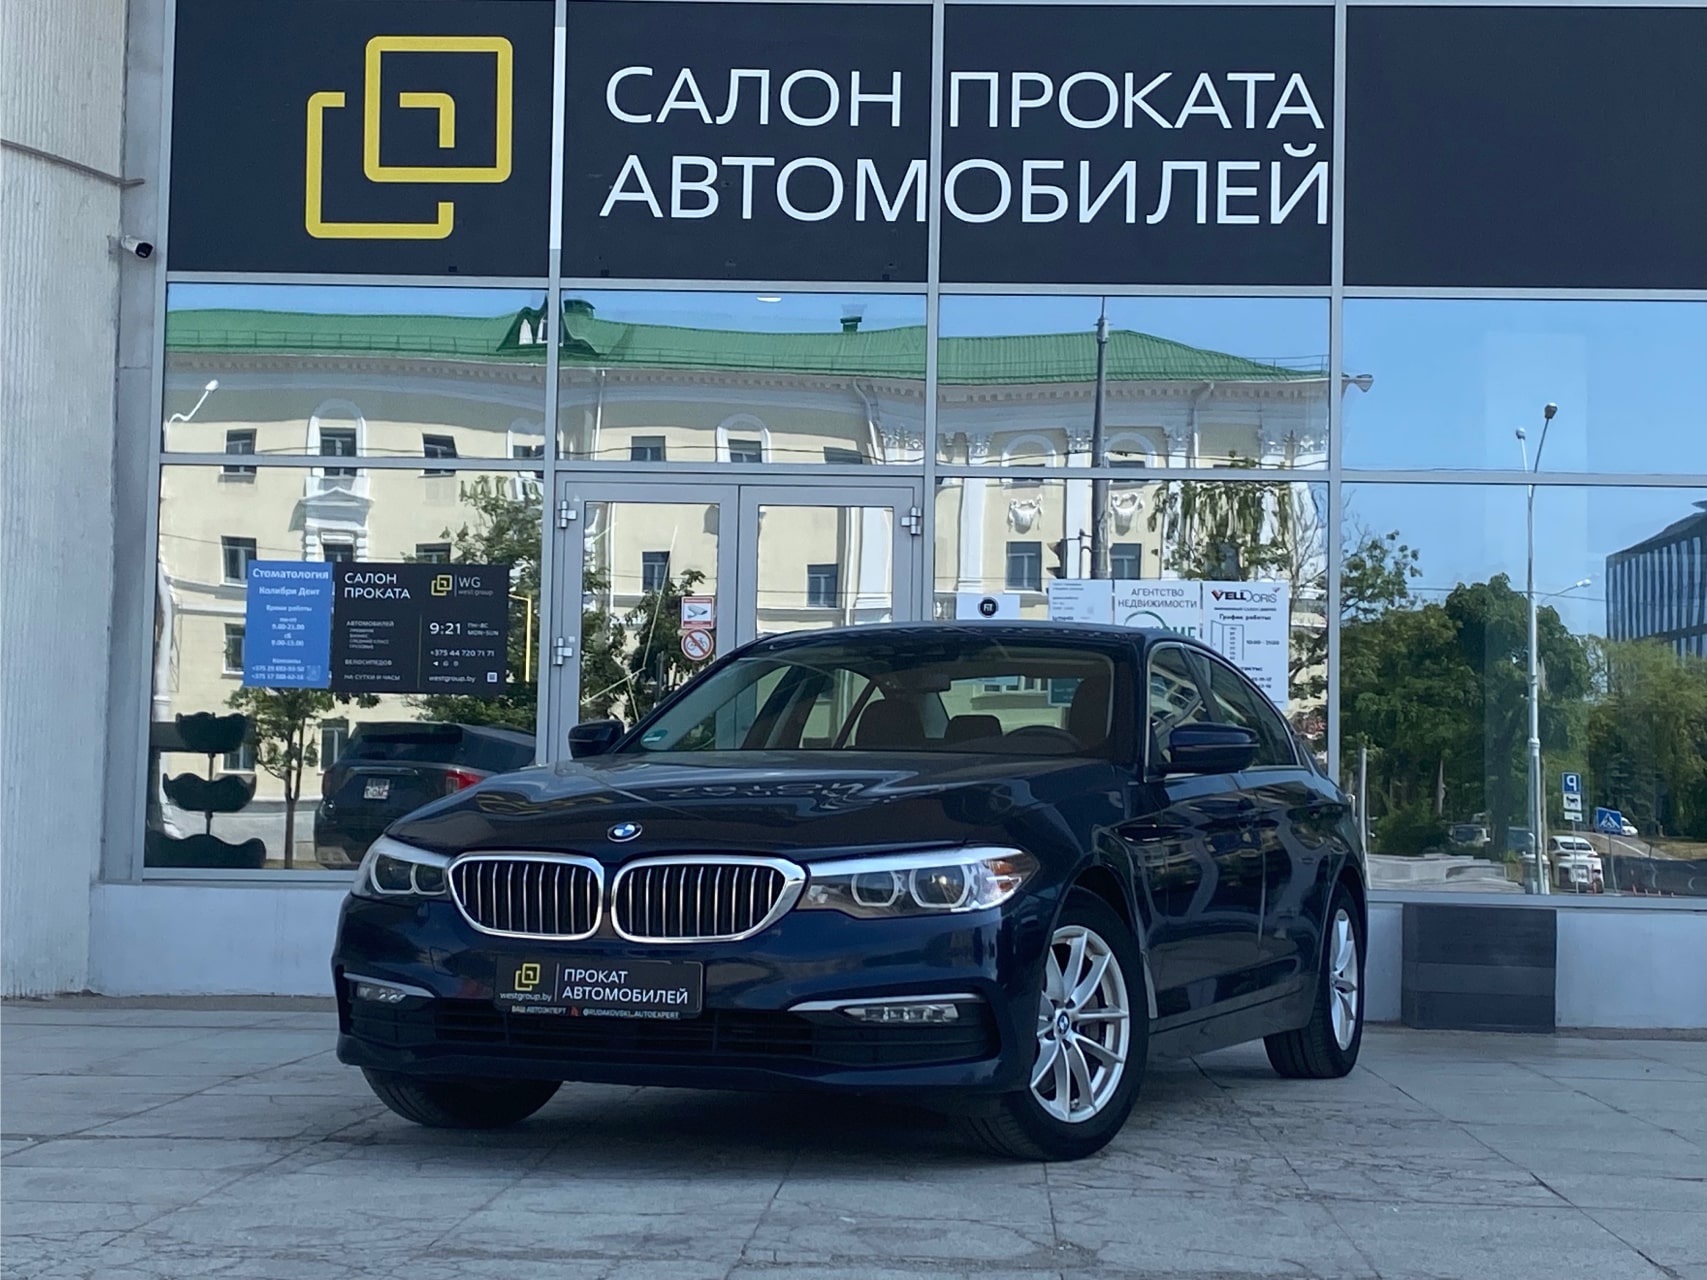 Аренда  BMW 520d G30 Luxury Line  3 класса 2019 года в городе Минск от 99 $/сутки,  двигатель: ДТ , объем 2.0 литров, КАСКО (Мультидрайв), без водителя, вид 1 - West Group